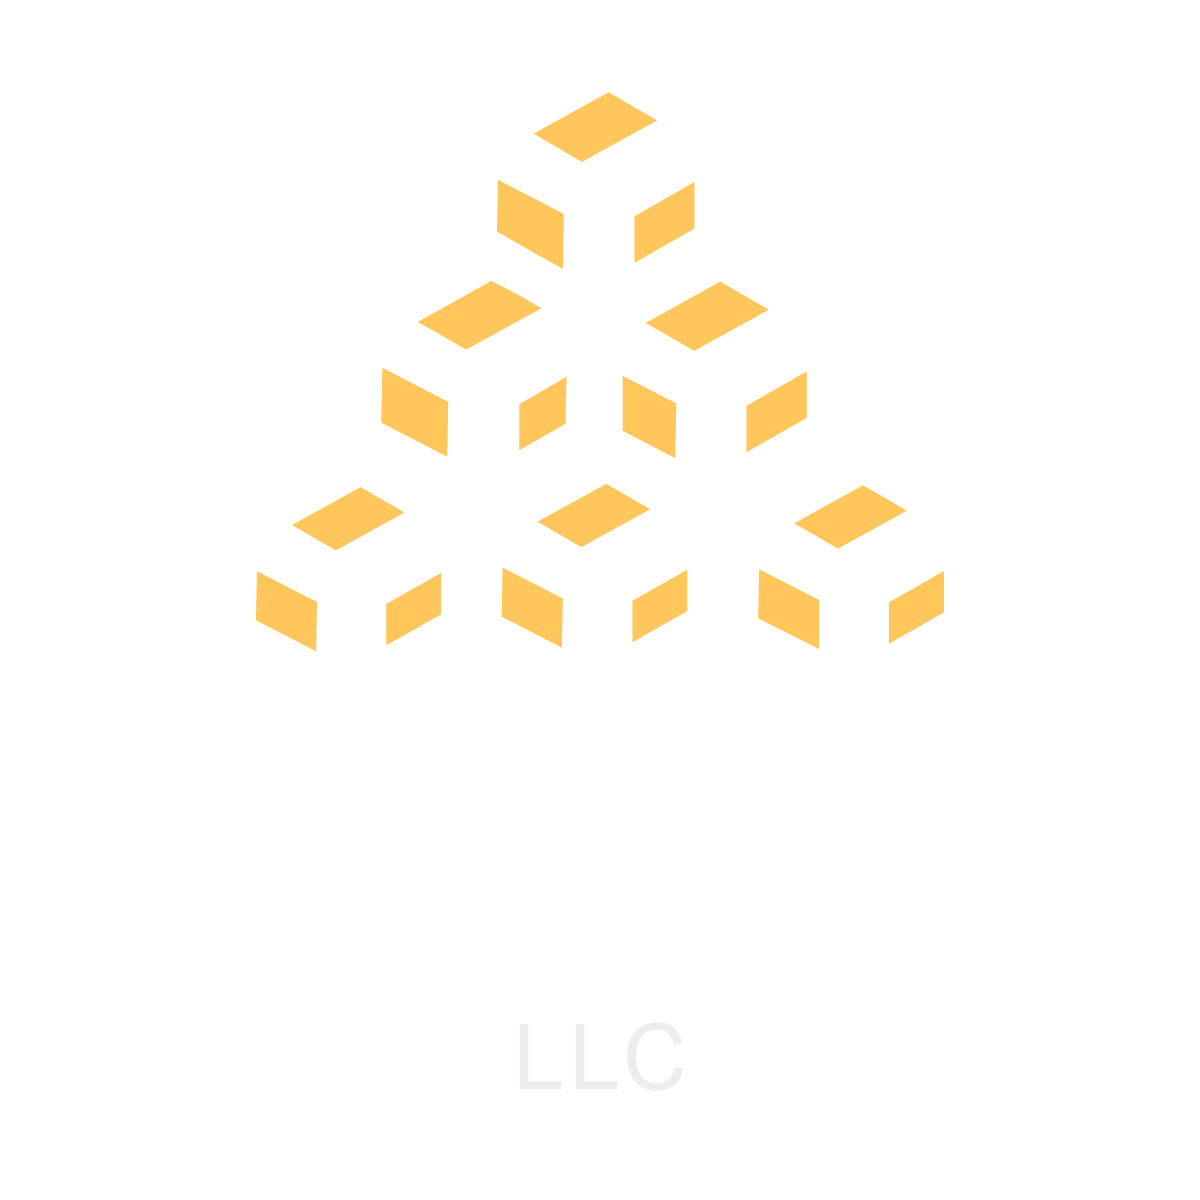 MAPO LLC logo